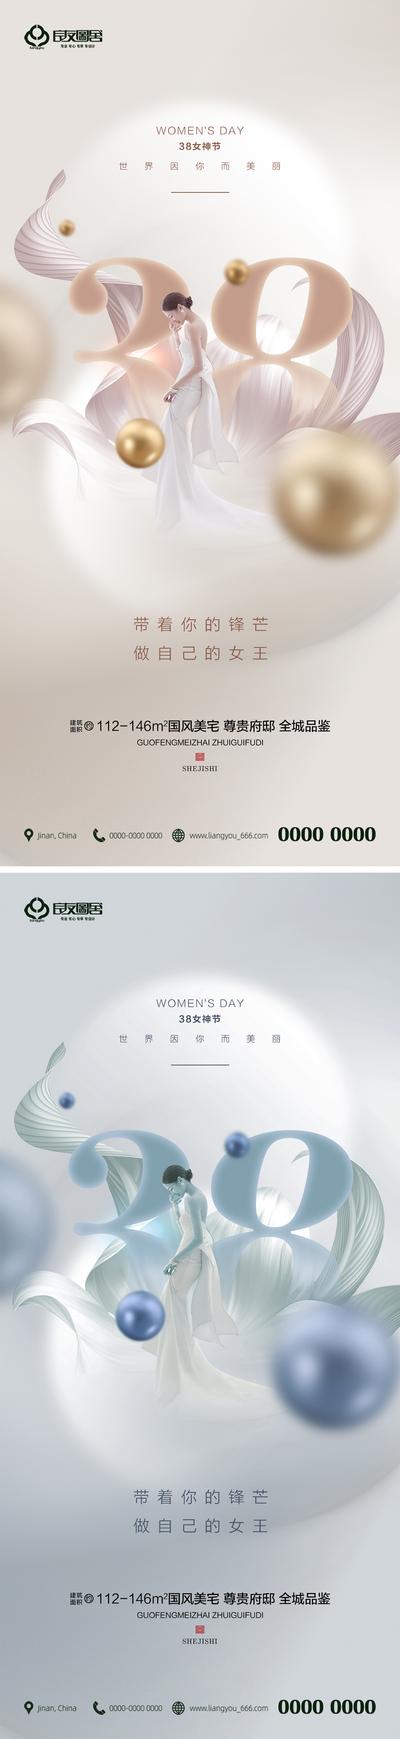 南门网 海报 地产 公历节日 38 妇女节 女神节 系列